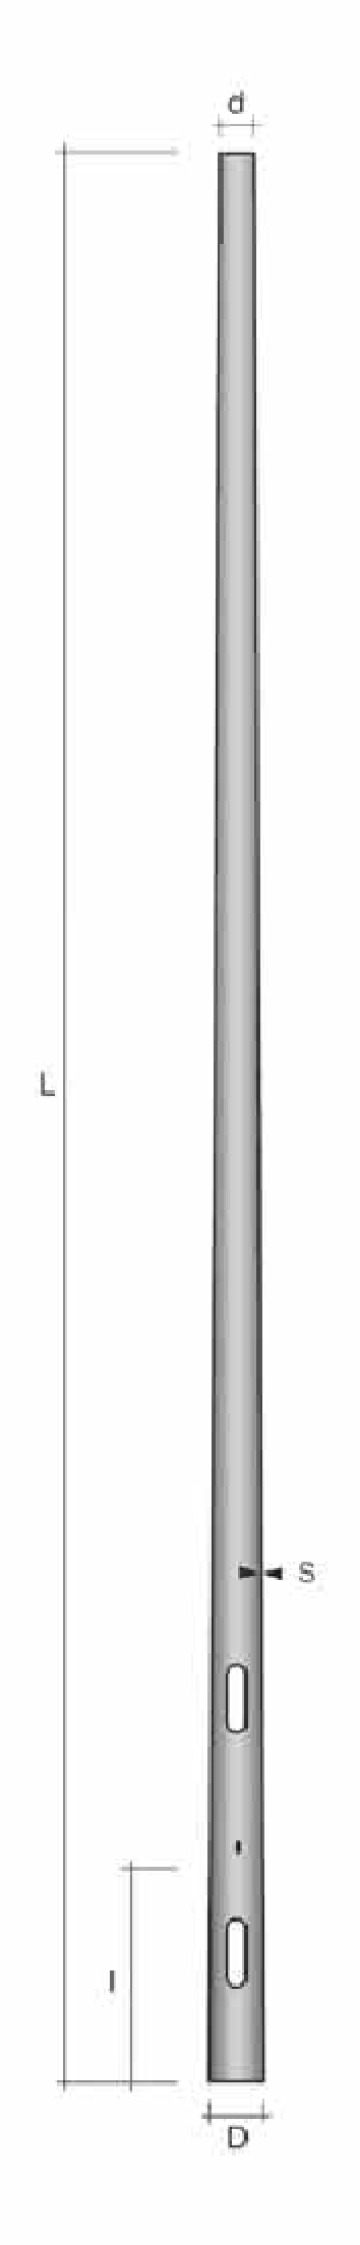 Stalp conic ingropat h=5.5m de la Metalsafe Lighting Srl